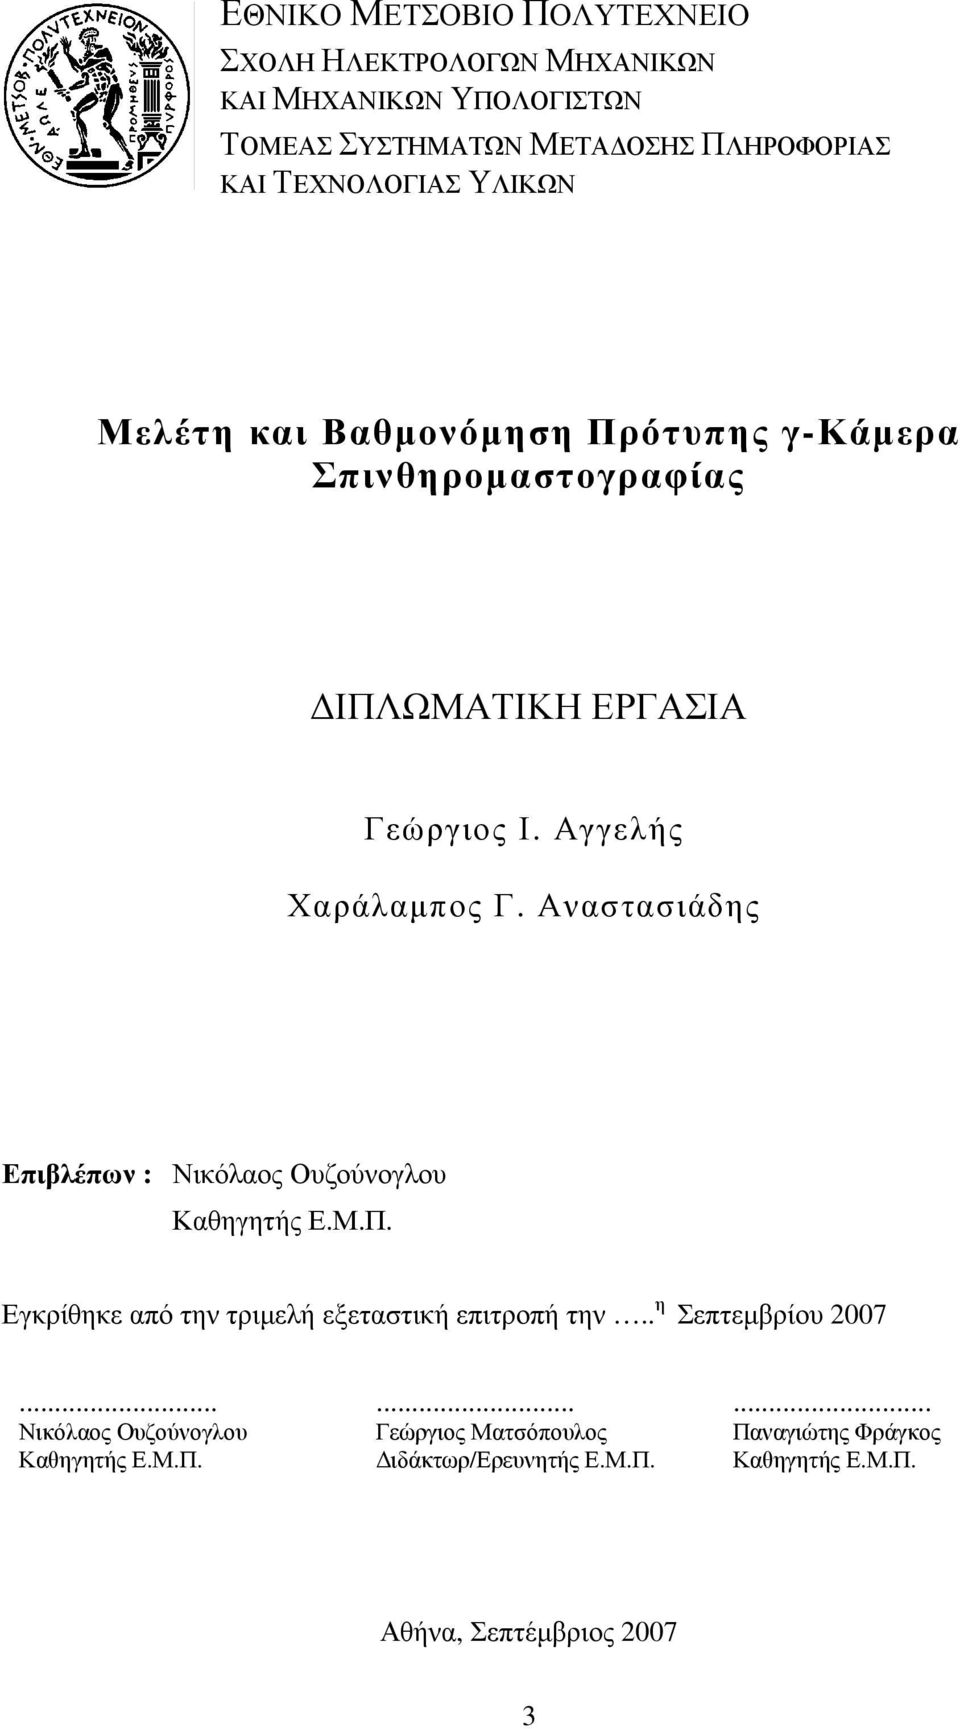 Αναστασιάδης Επιβλέπων : Νικόλαος Ουζούνογλου Καθηγητής Ε.Μ.Π. Εγκρίθηκε από την τριµελή εξεταστική επιτροπή την.. η Σεπτεµβρίου 2007.